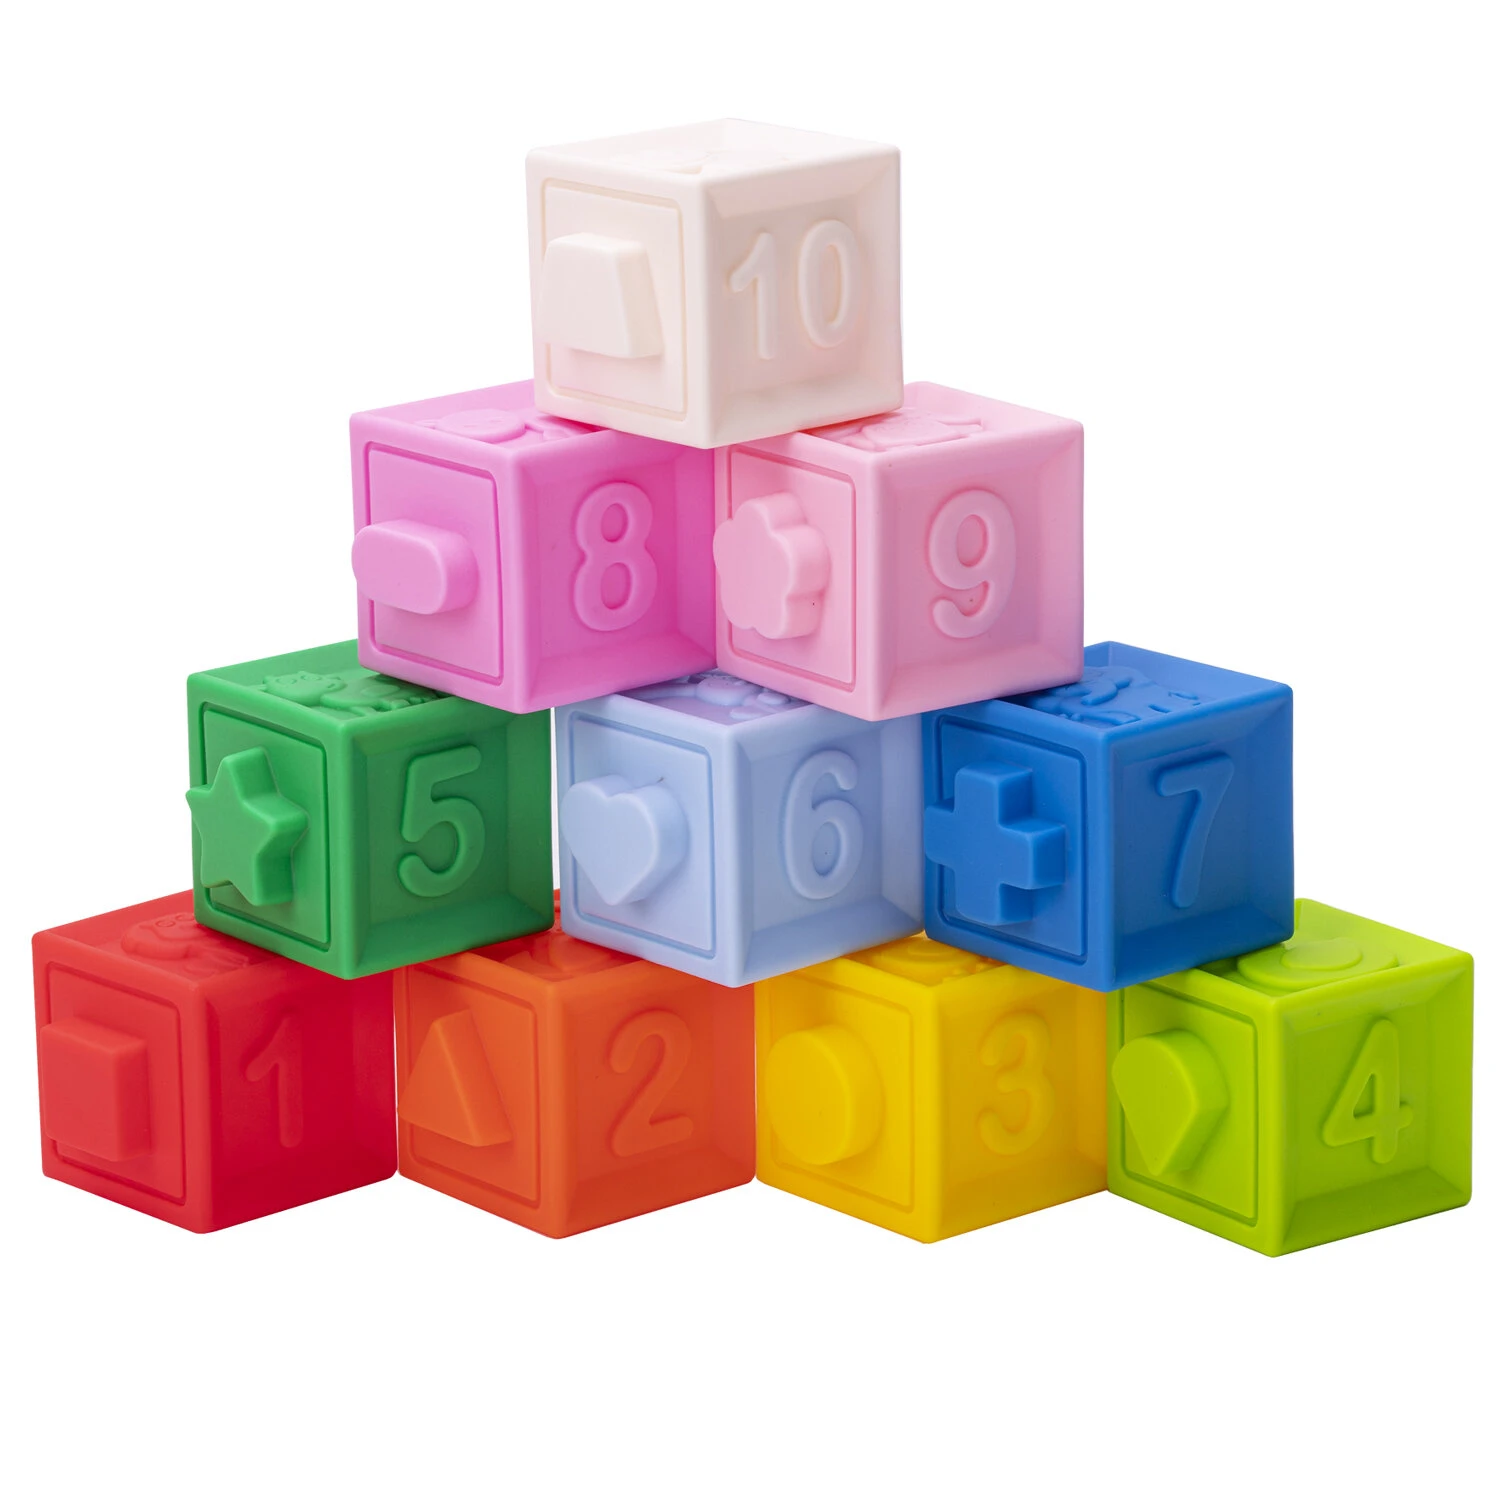 Тактильные кубики, сенсорные игрушки развивающие с функцией сортера, ЭКО, 10